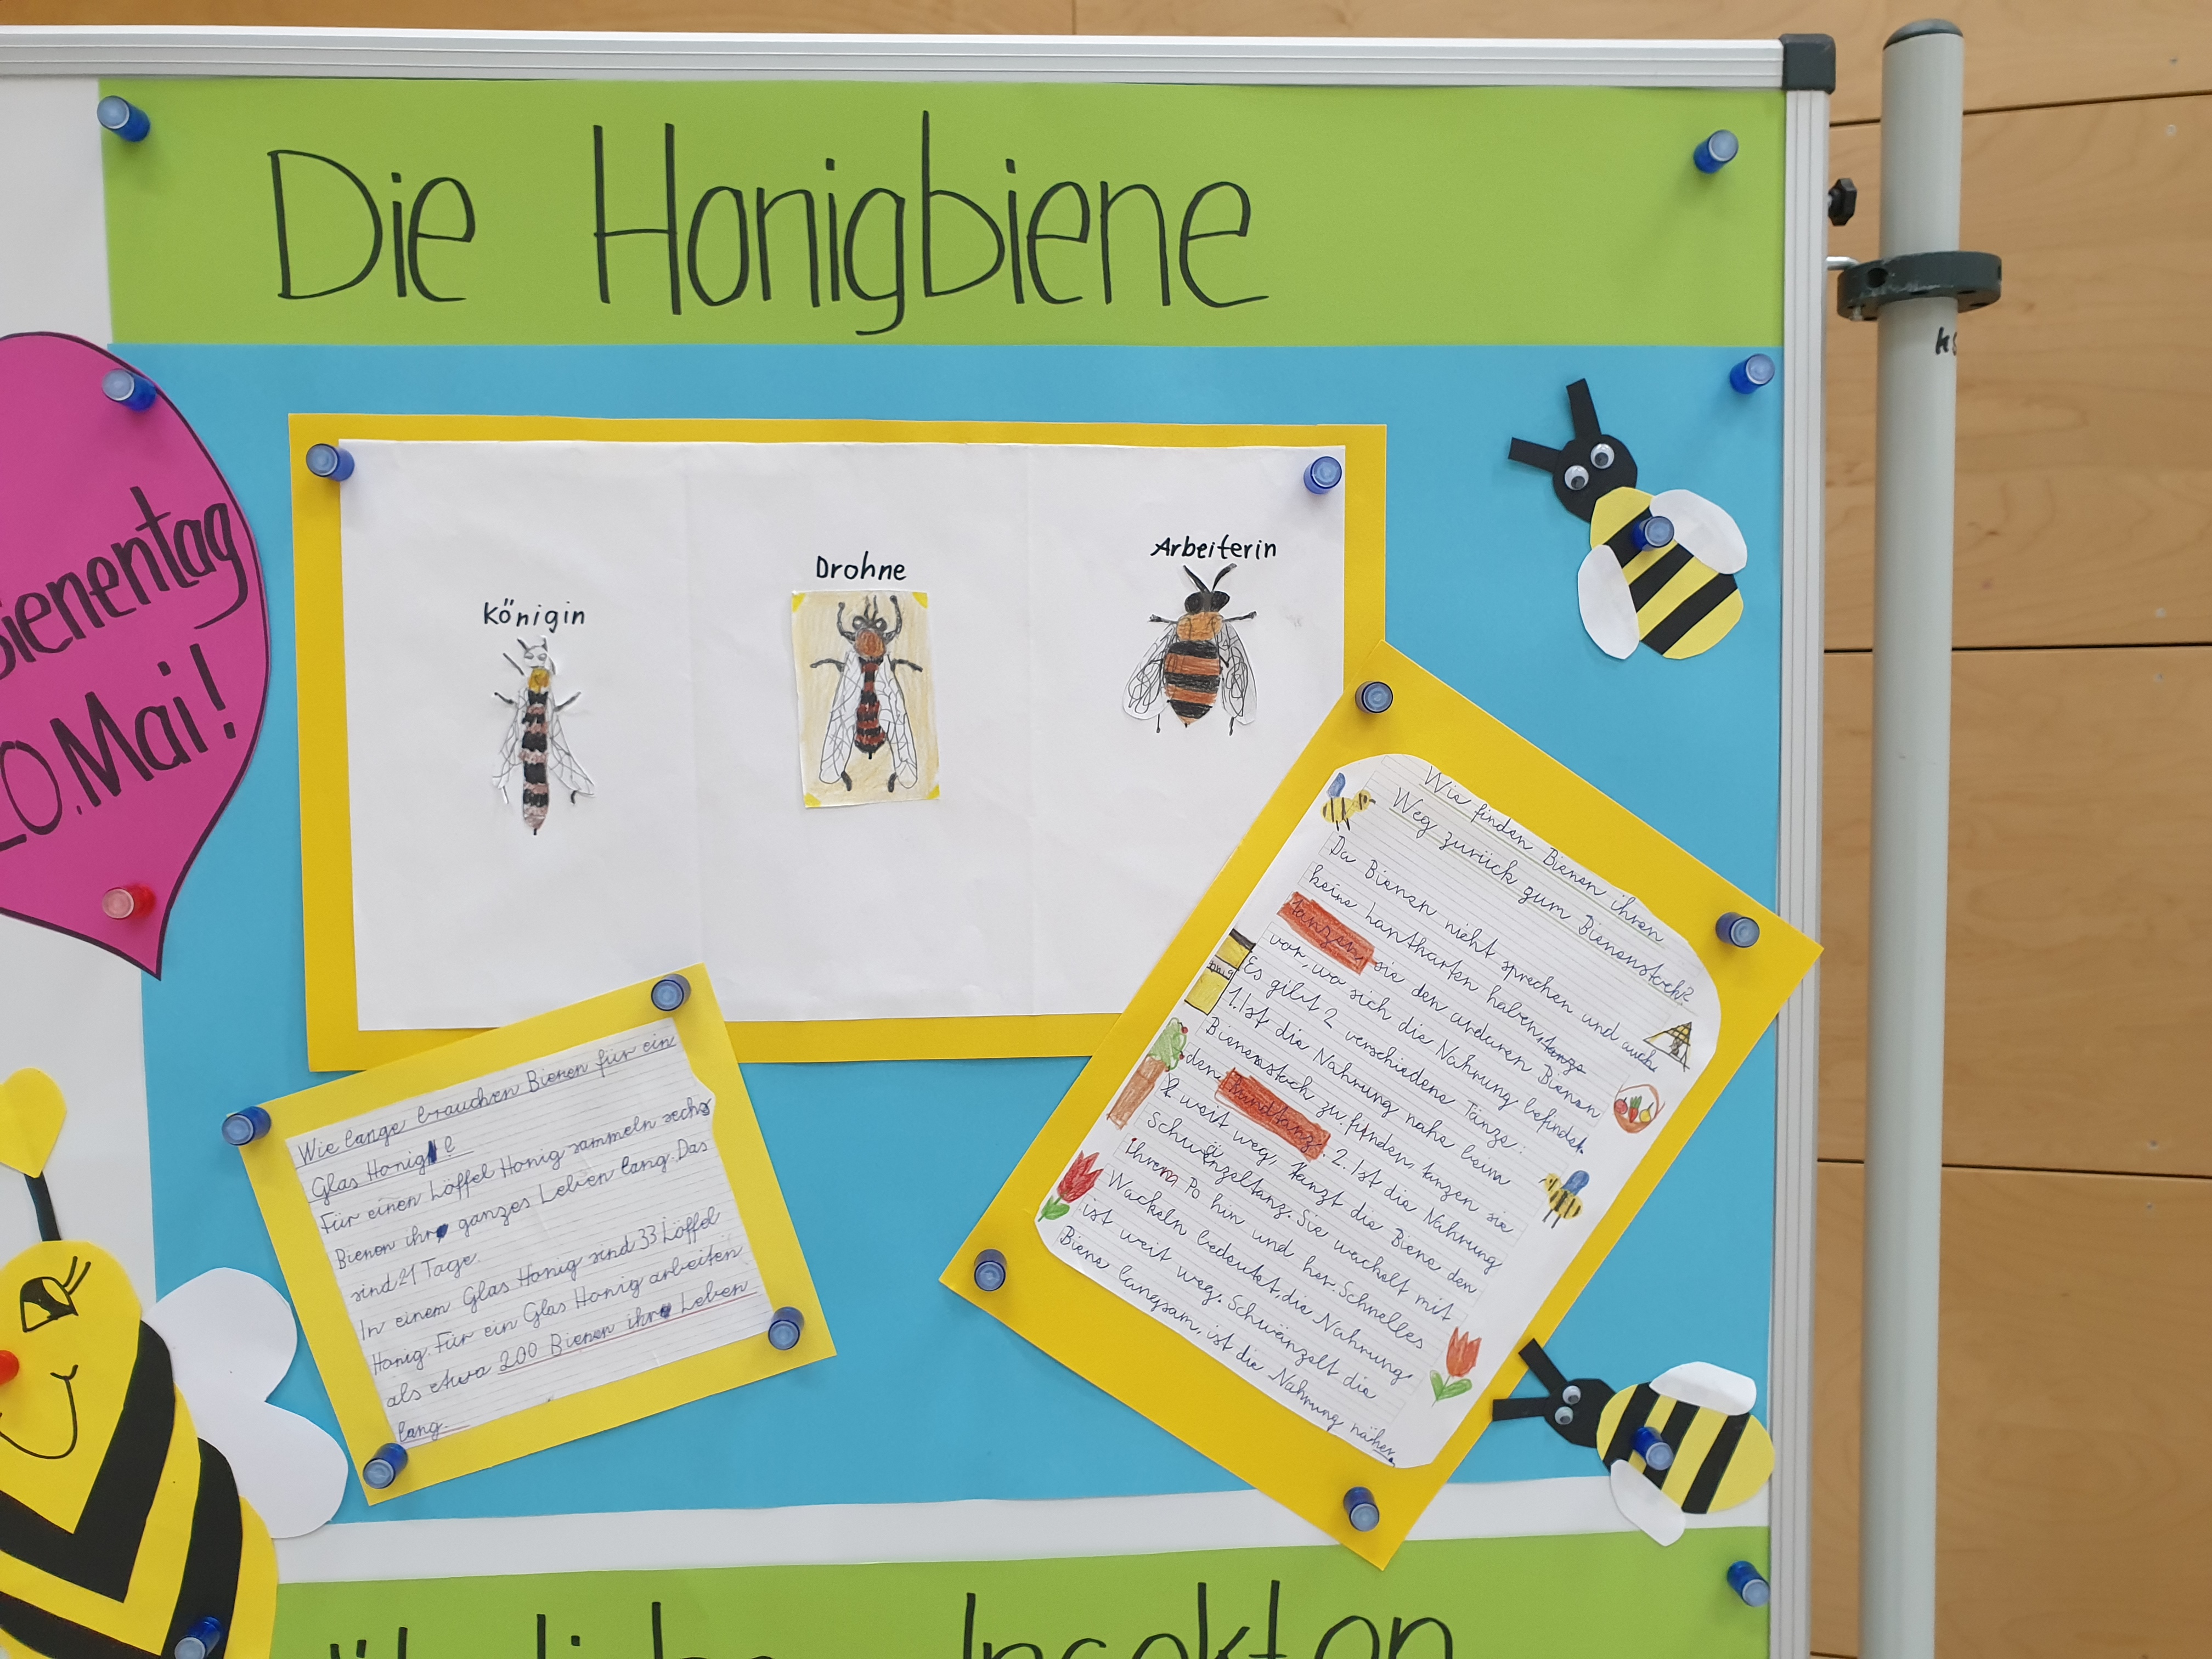 Die Honigbiene - Schülerarbeit